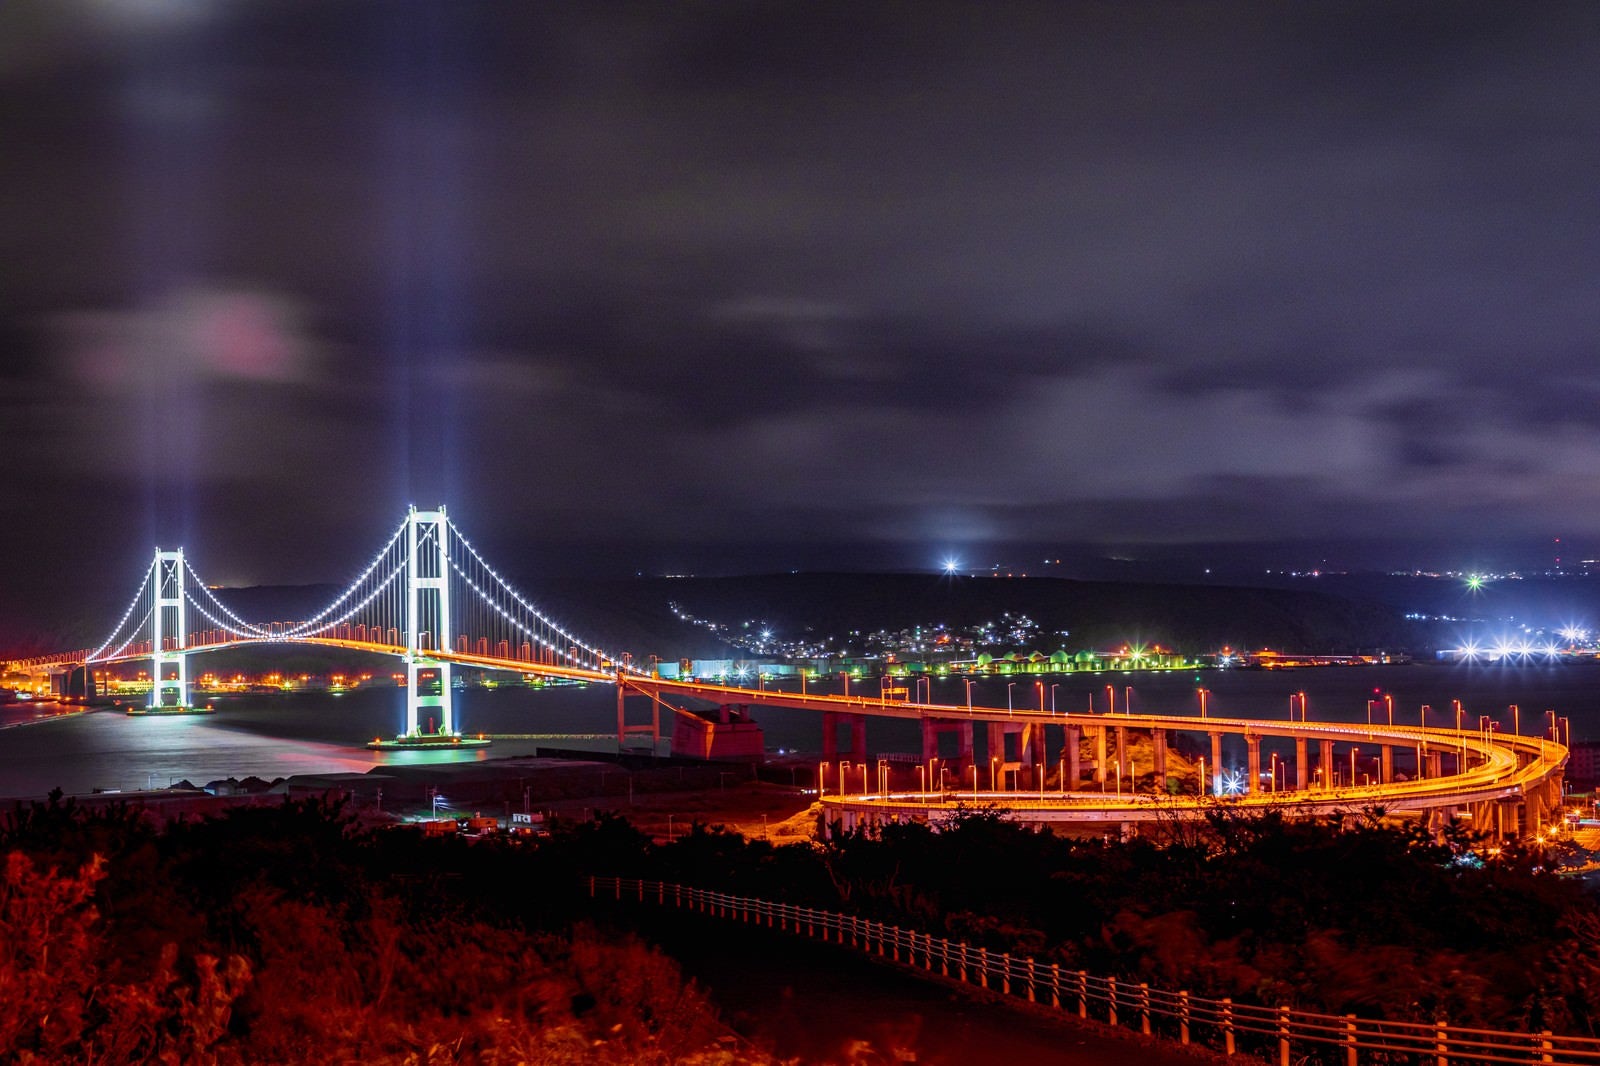 「室蘭祝津公園展望台からの夜景」の写真